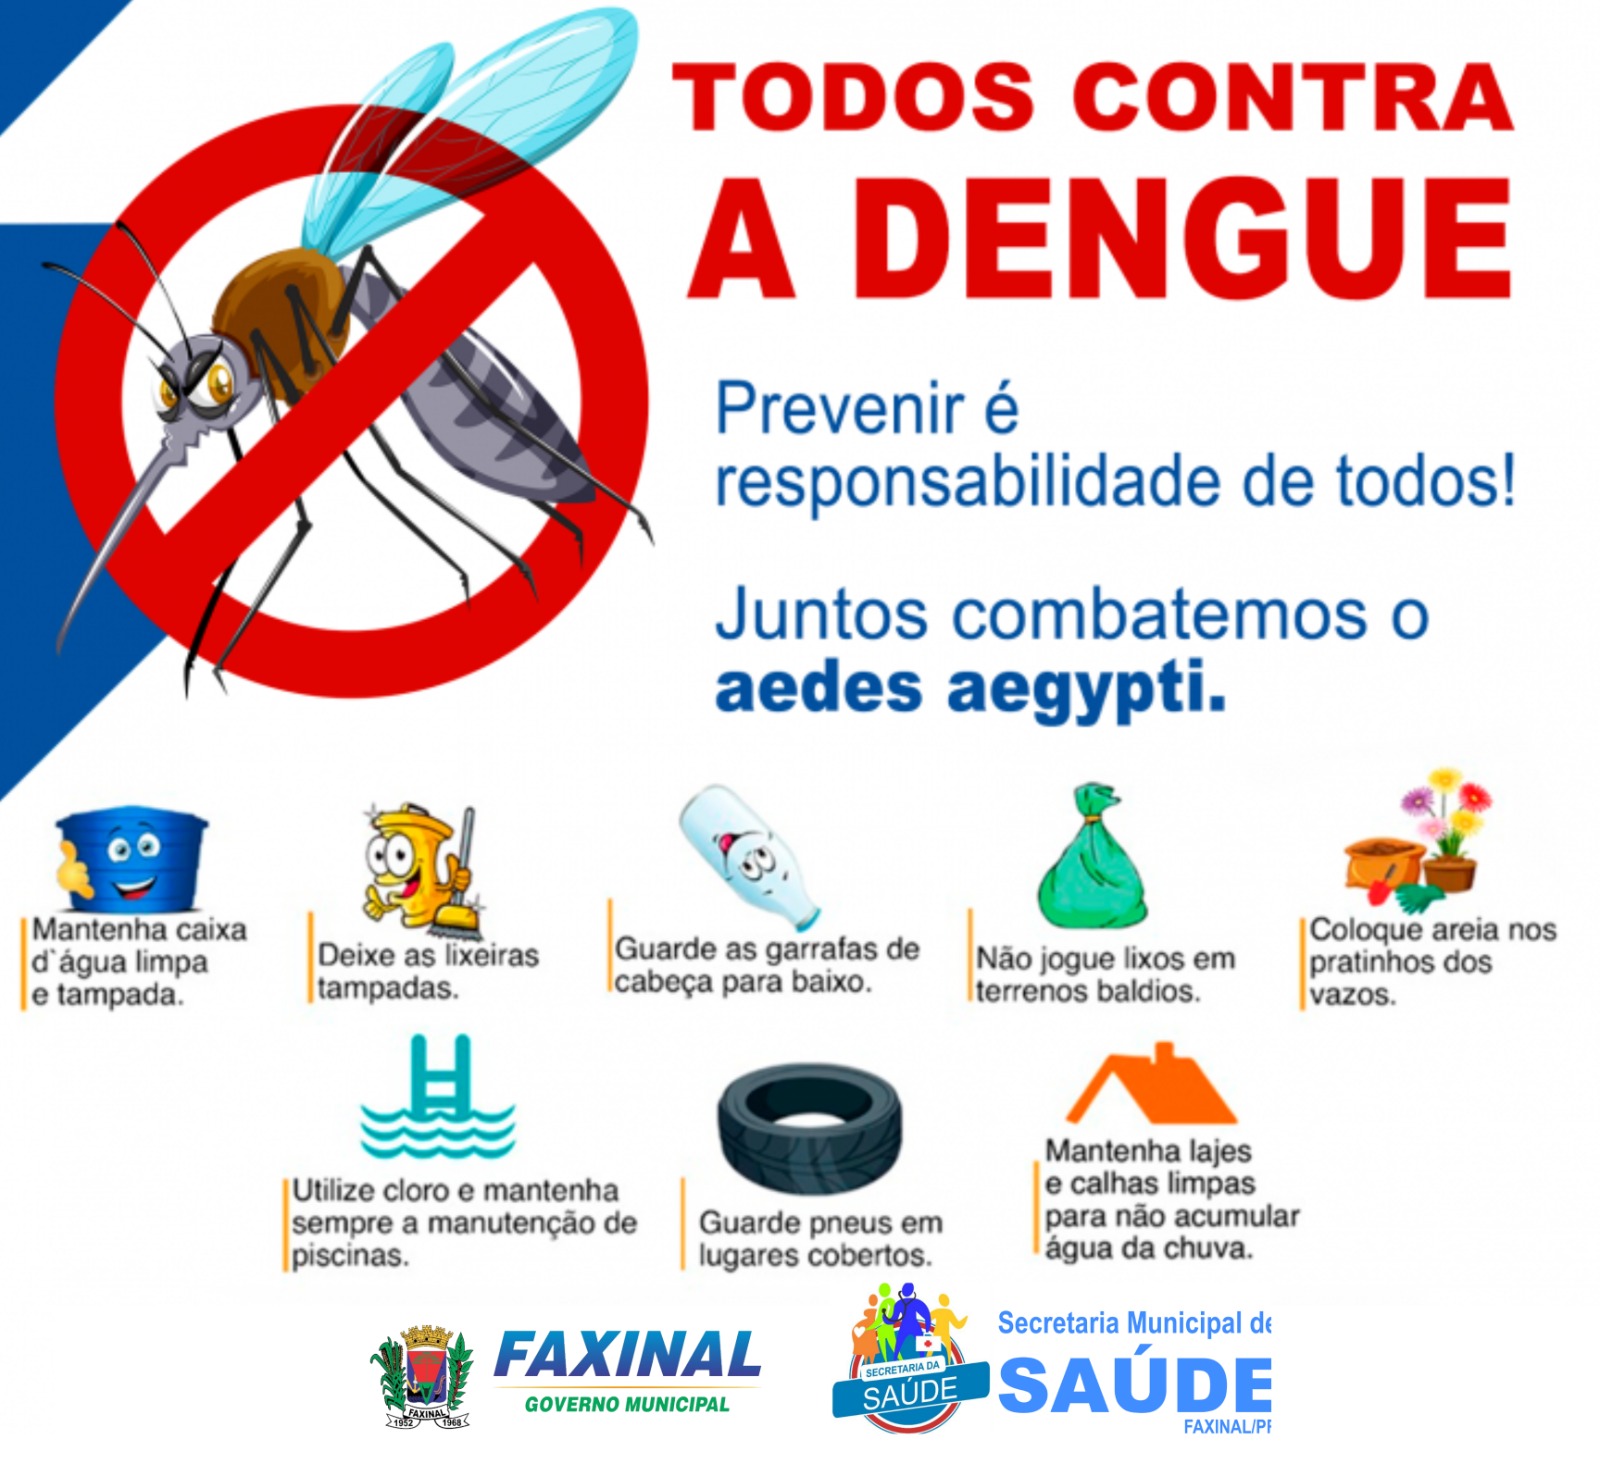 FAXINAL - Todos contra a Dengue